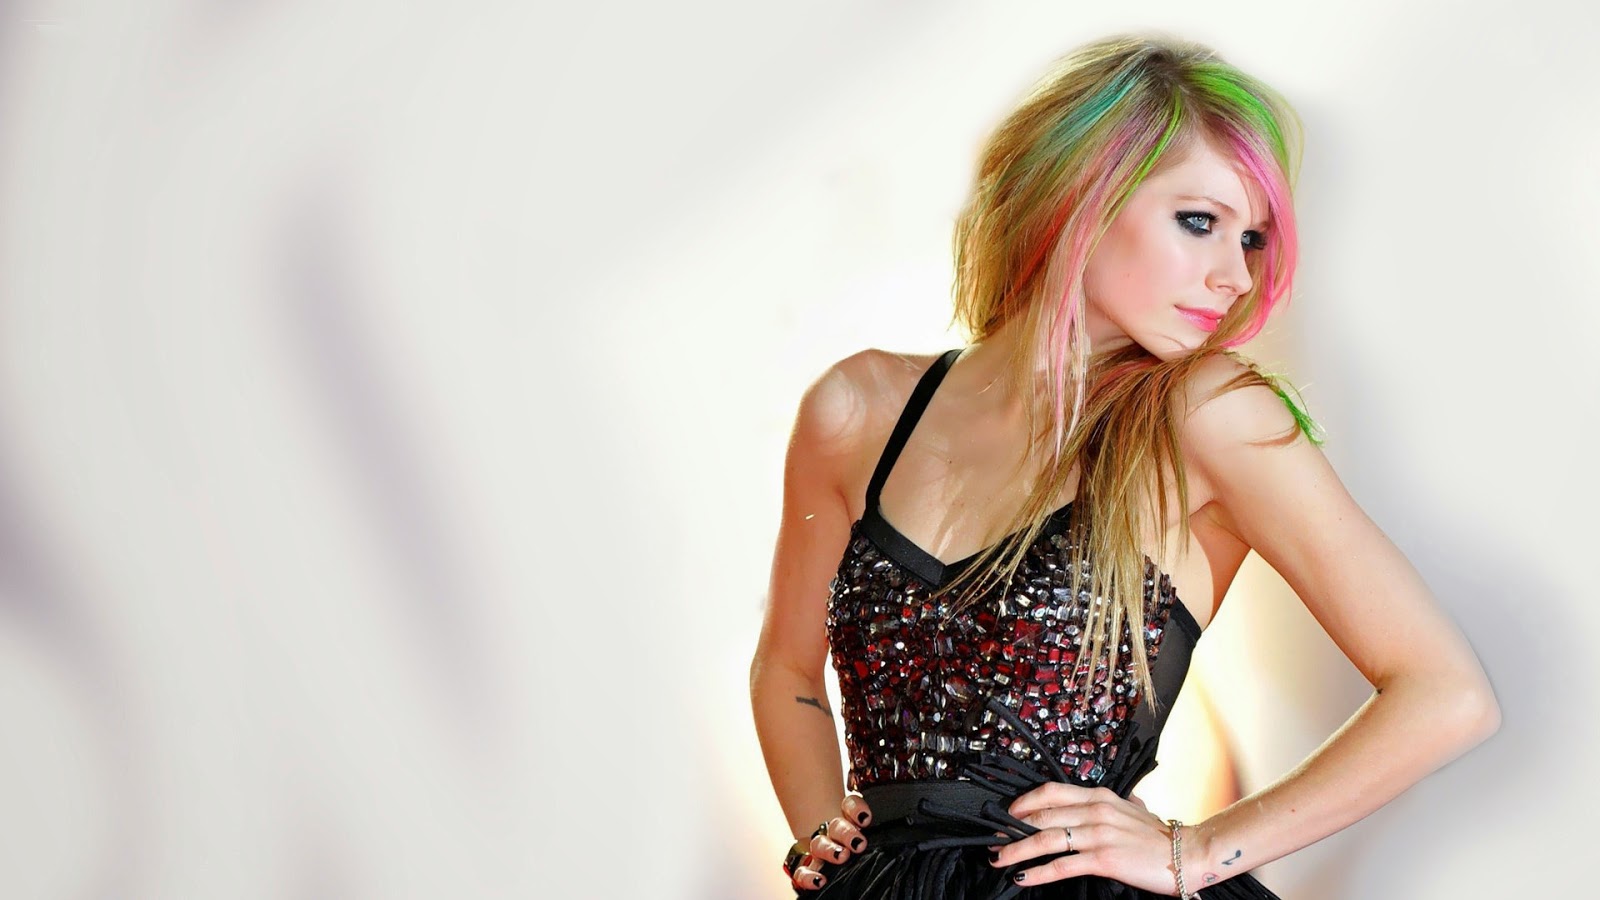 Wallpaper Avril Lavigne Famous Singer Desktop